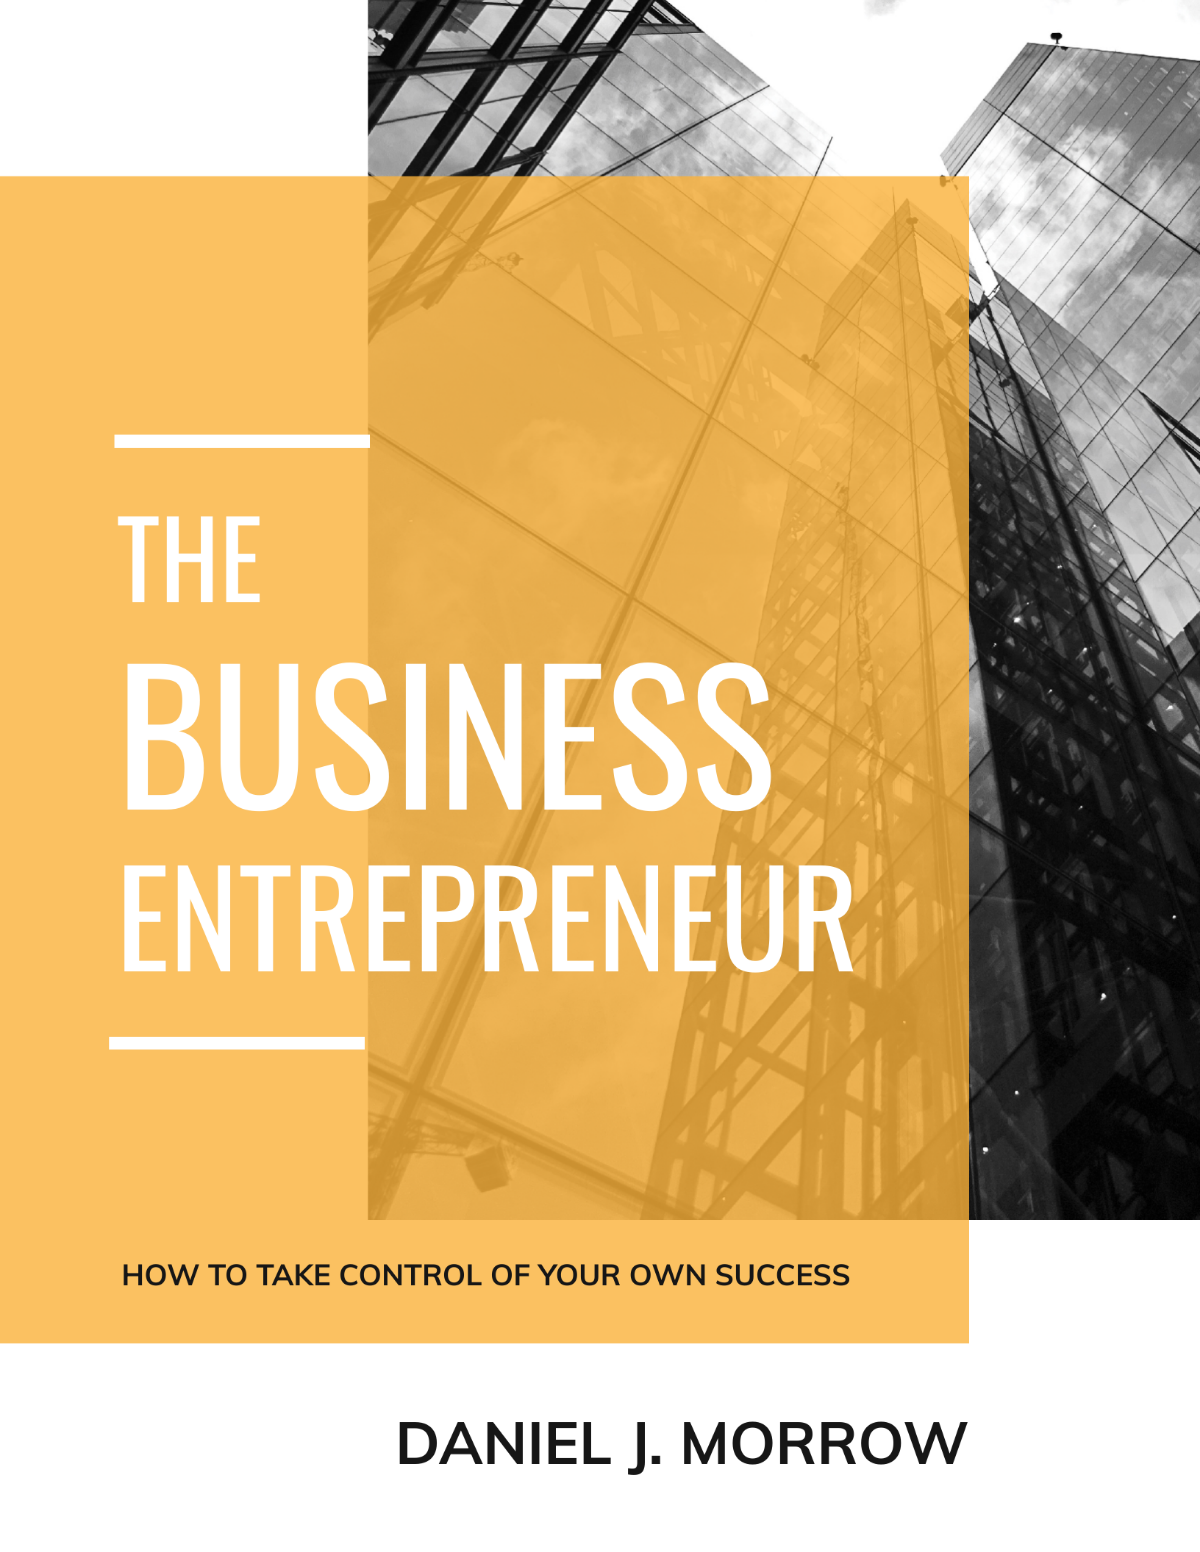 Entrepreneur Book Cover Template